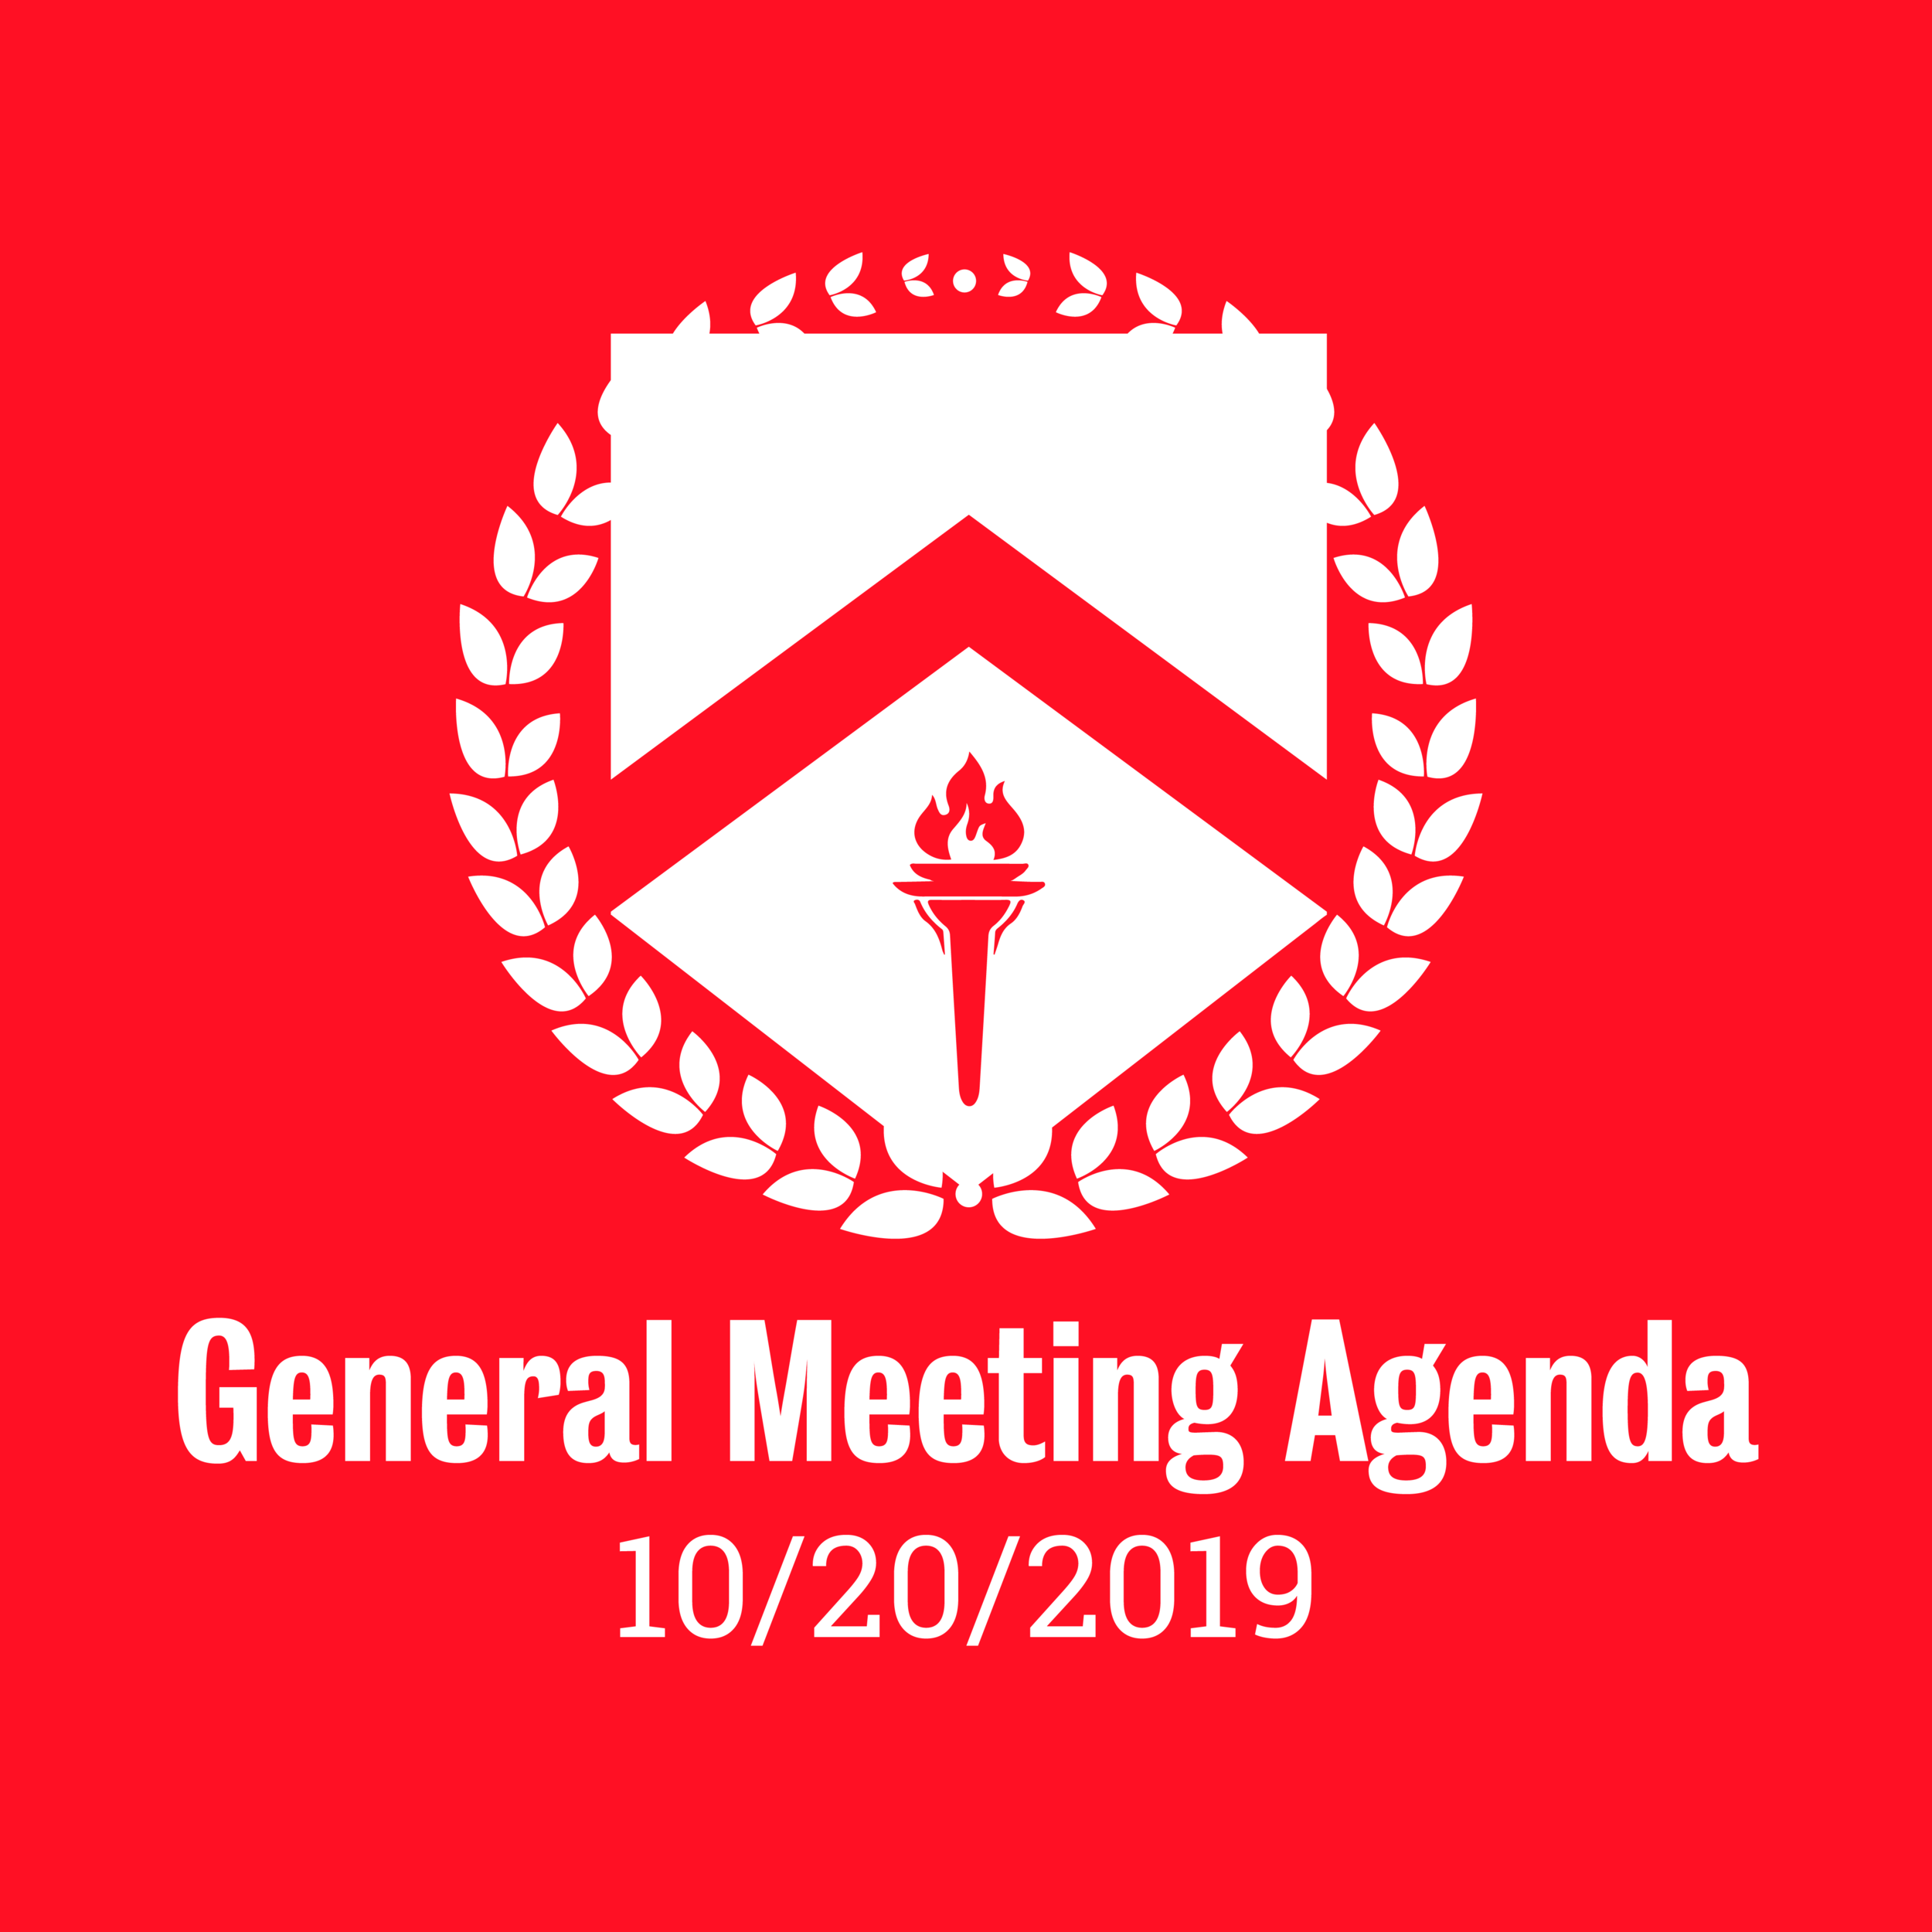 General Meeting Agenda 10/20/2019